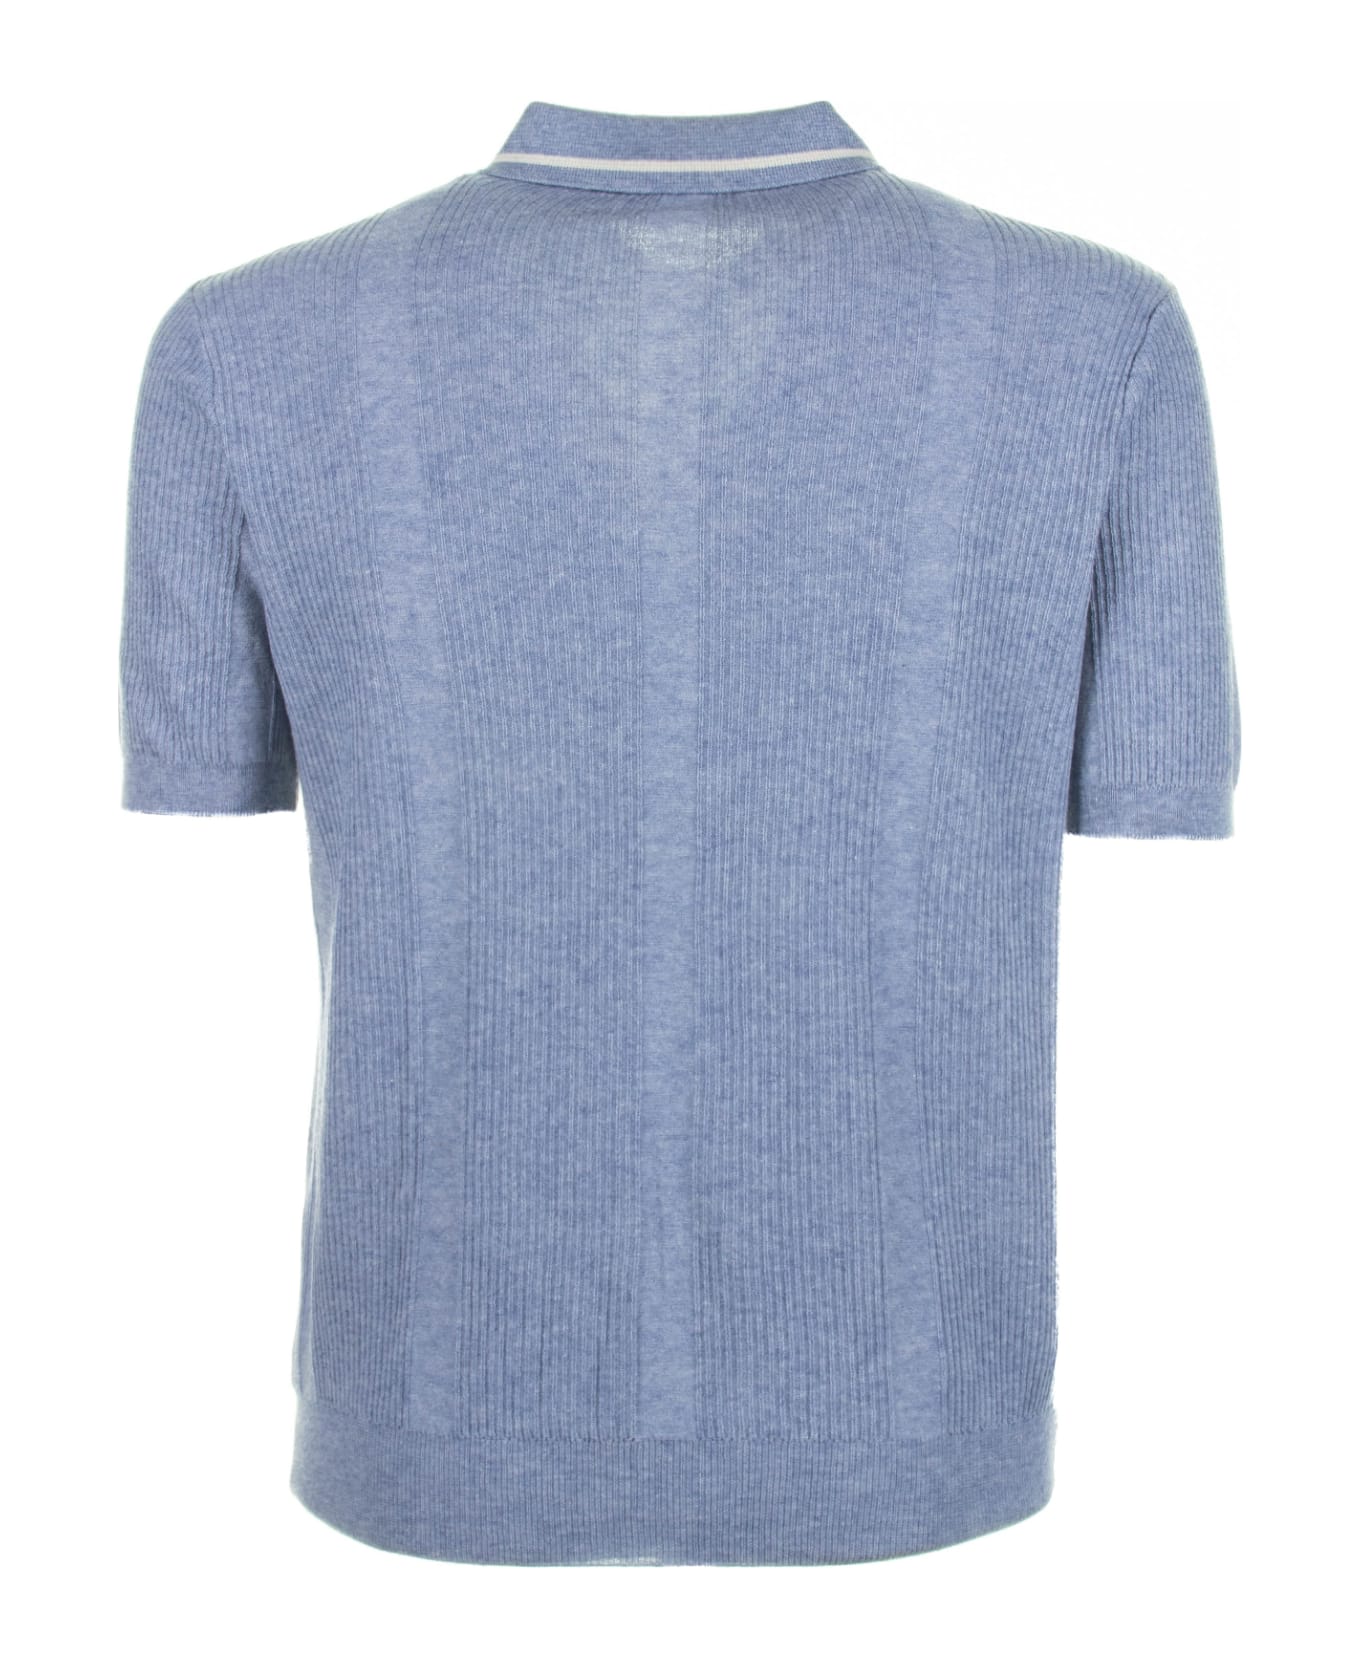 Altea Air Force Blue Short-sleeved Polo Shirt - AVIO ポロシャツ